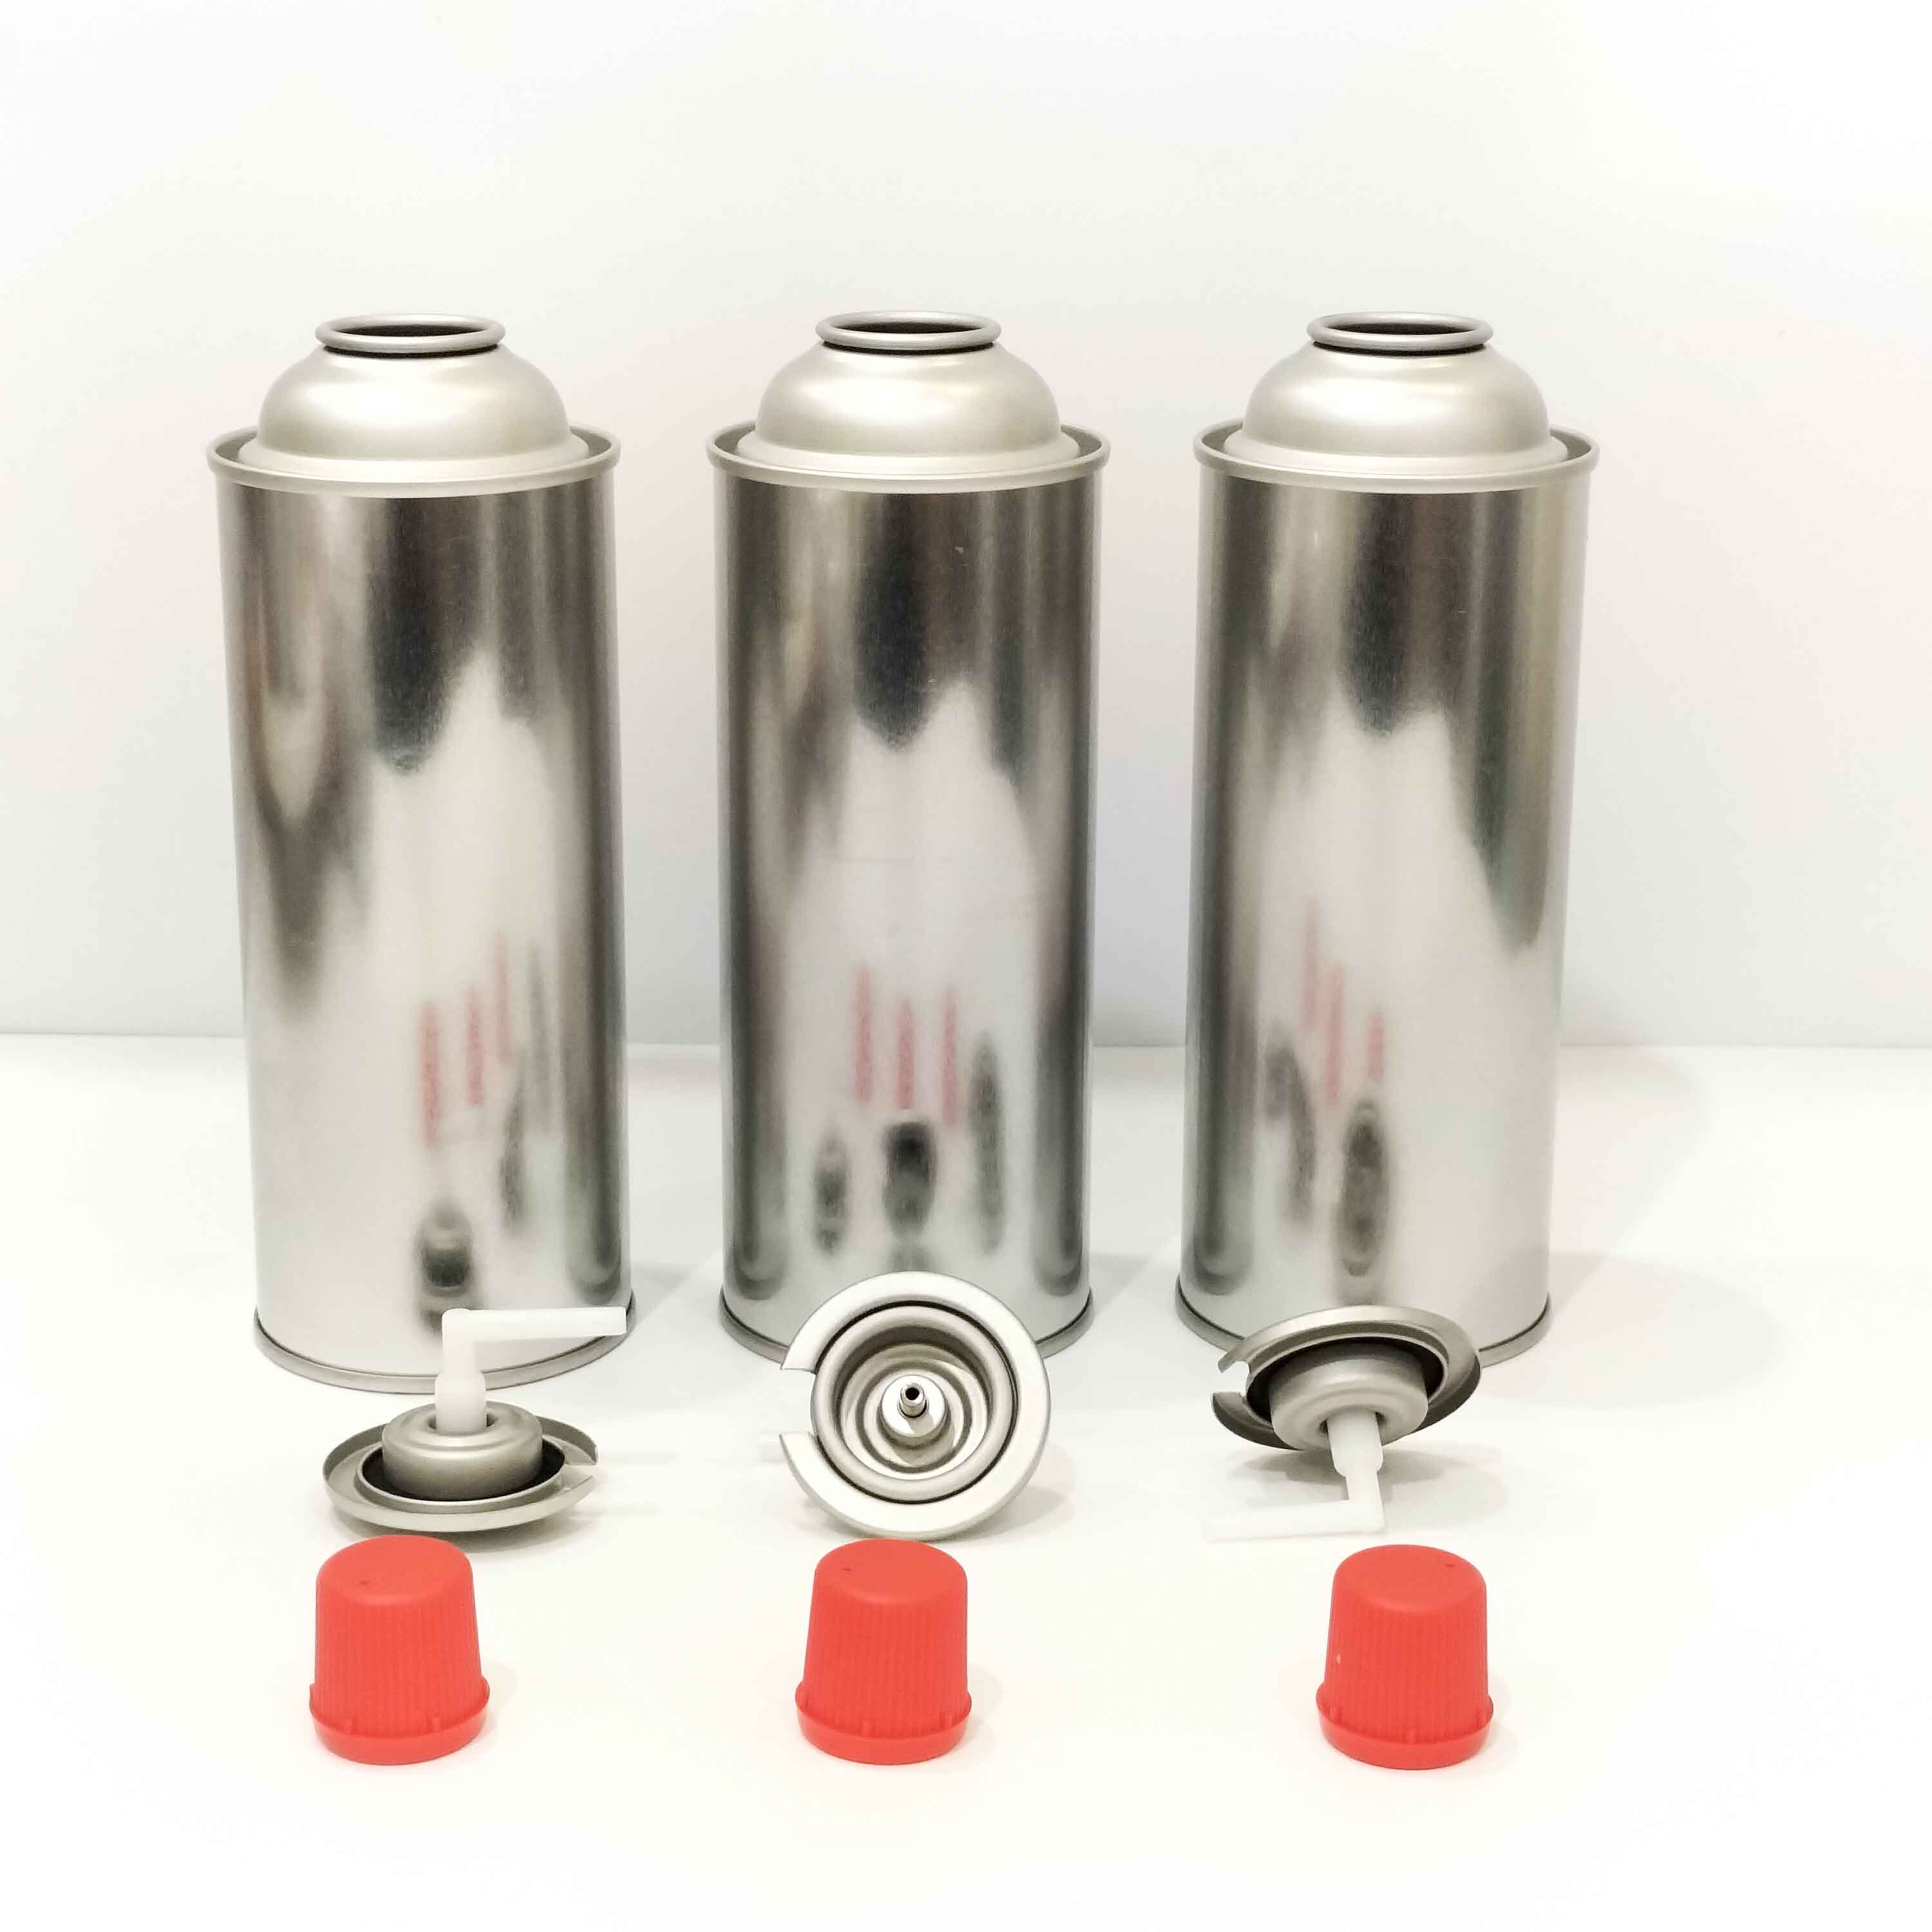 OEM Custom Emprty Butane Gas Aerosol Tin Cans